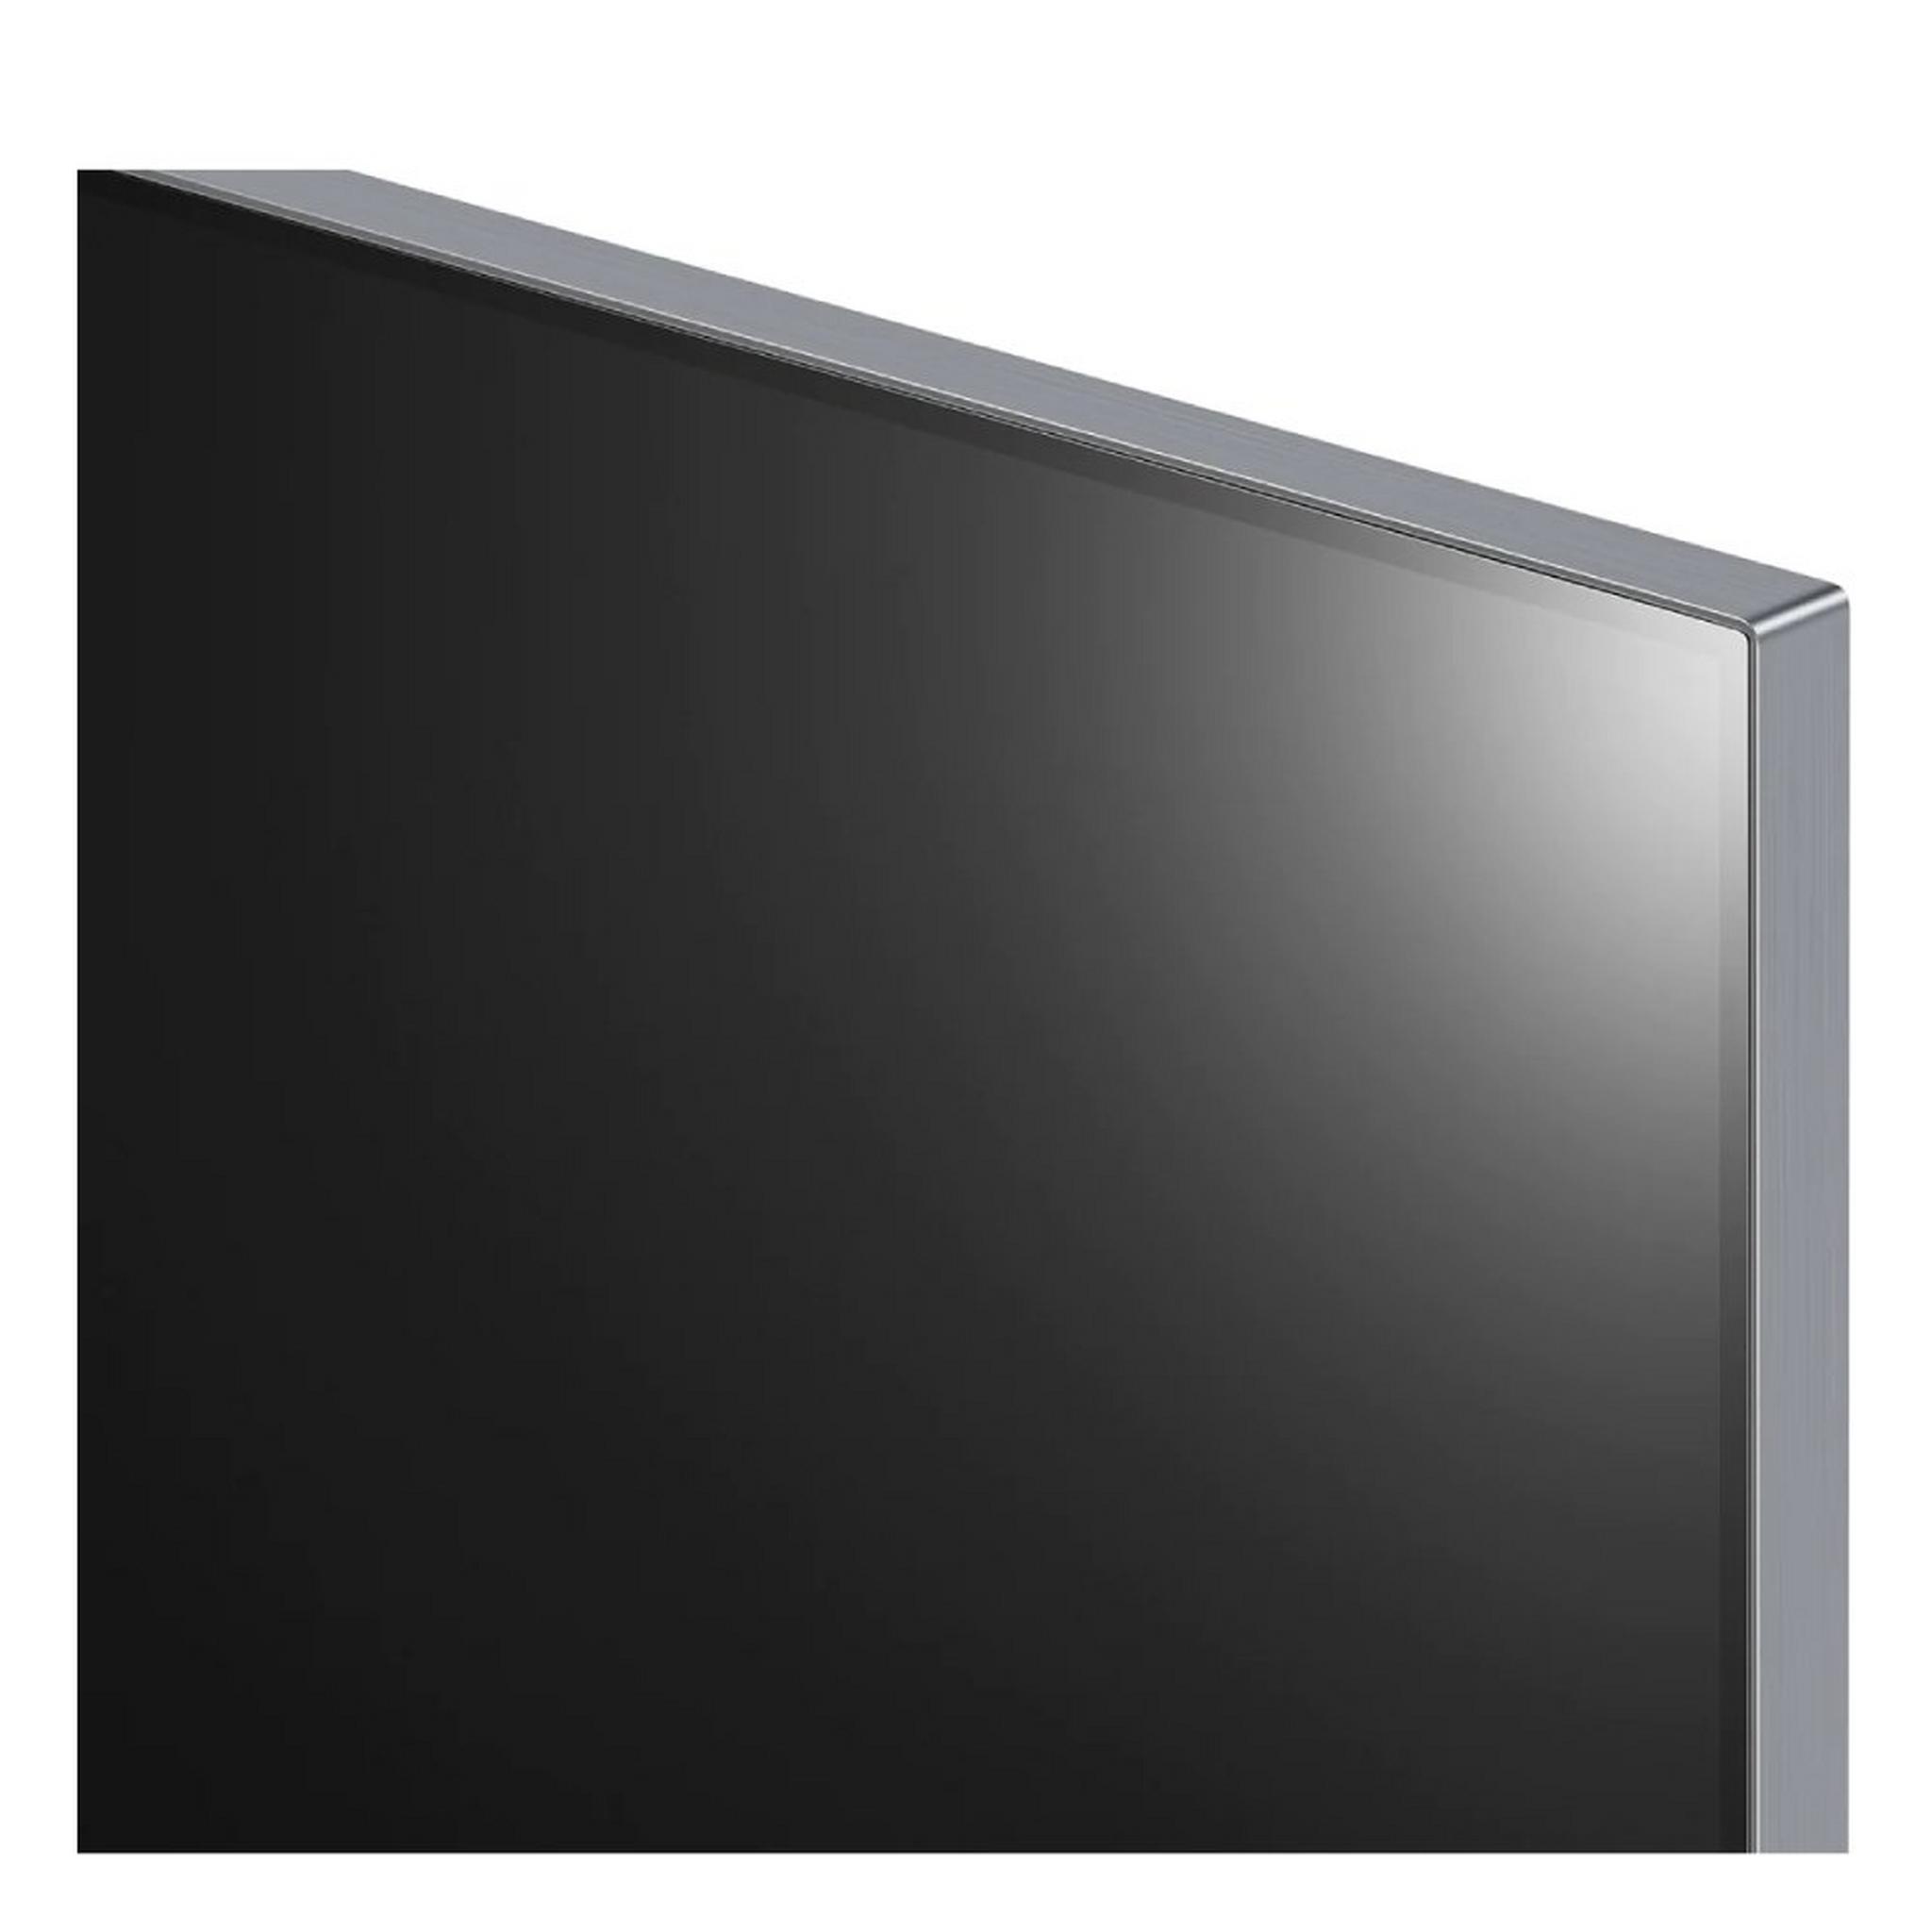 شاشة تلفزيون  ذكي ايفو جي2 مقاس 65 بوصة من أل جي، اوه ليد 4 كيه، OLED65G2 - اسود